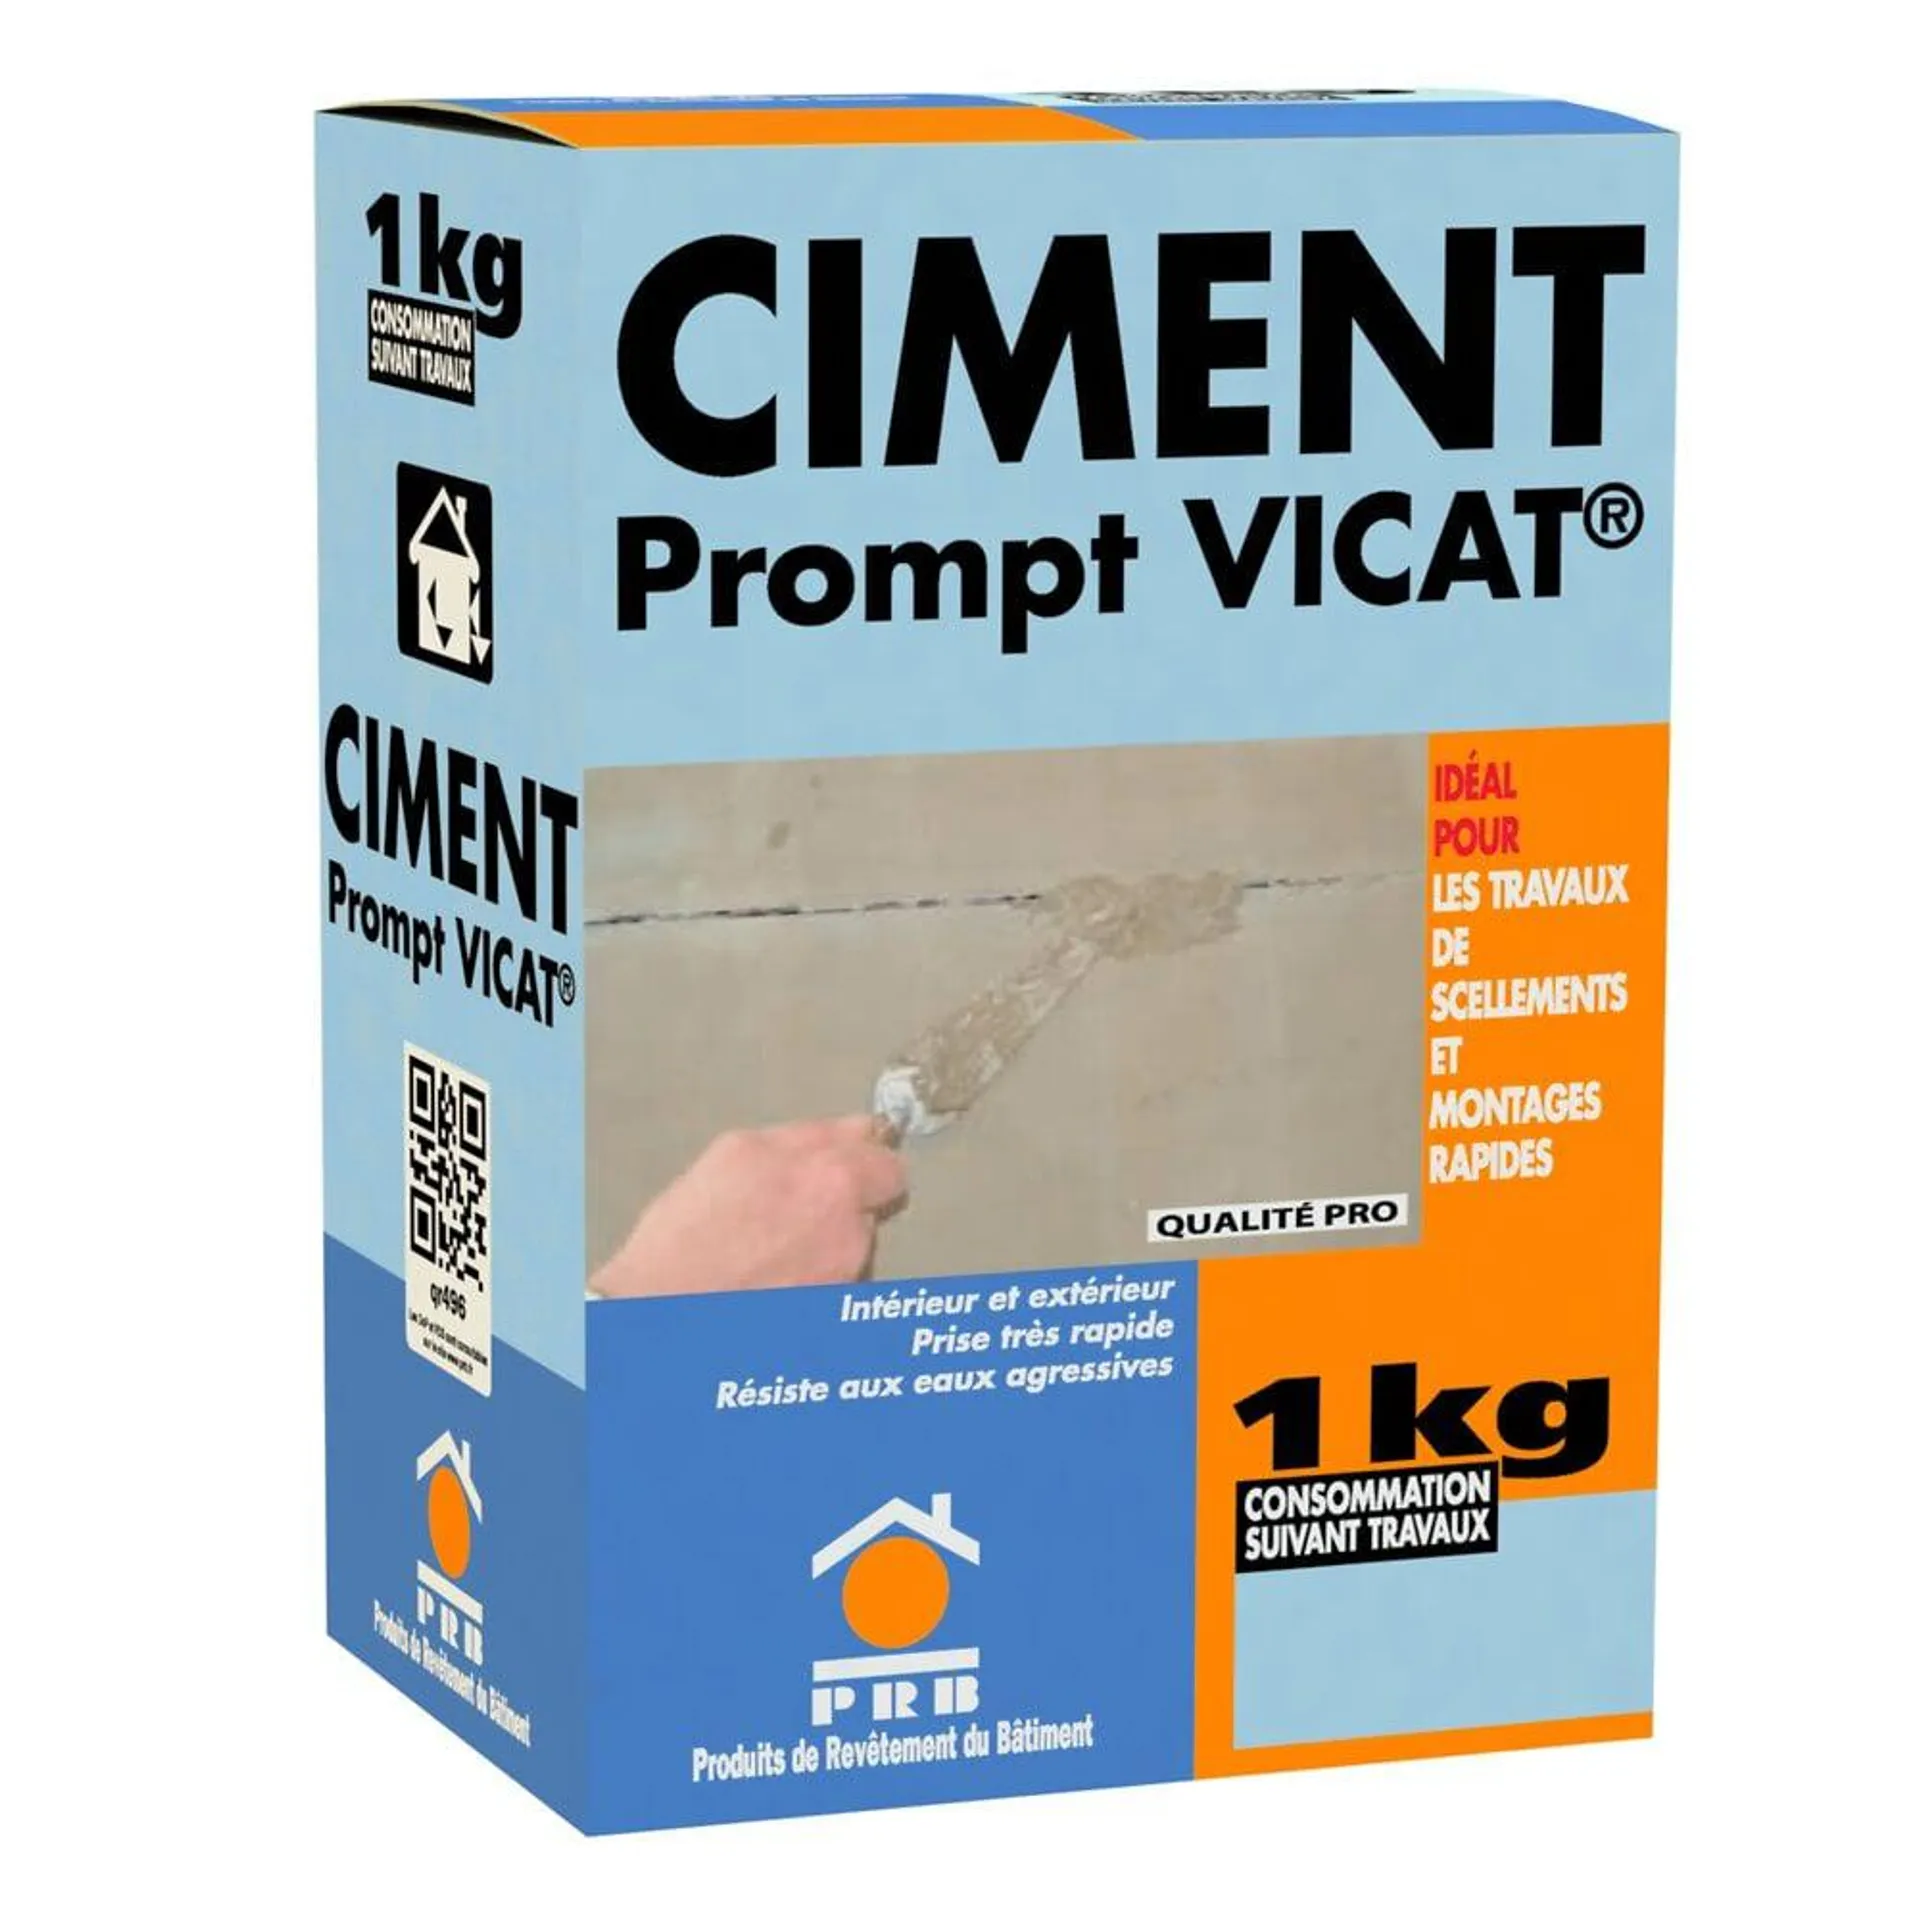 Ciment prompt vicat - 1kg